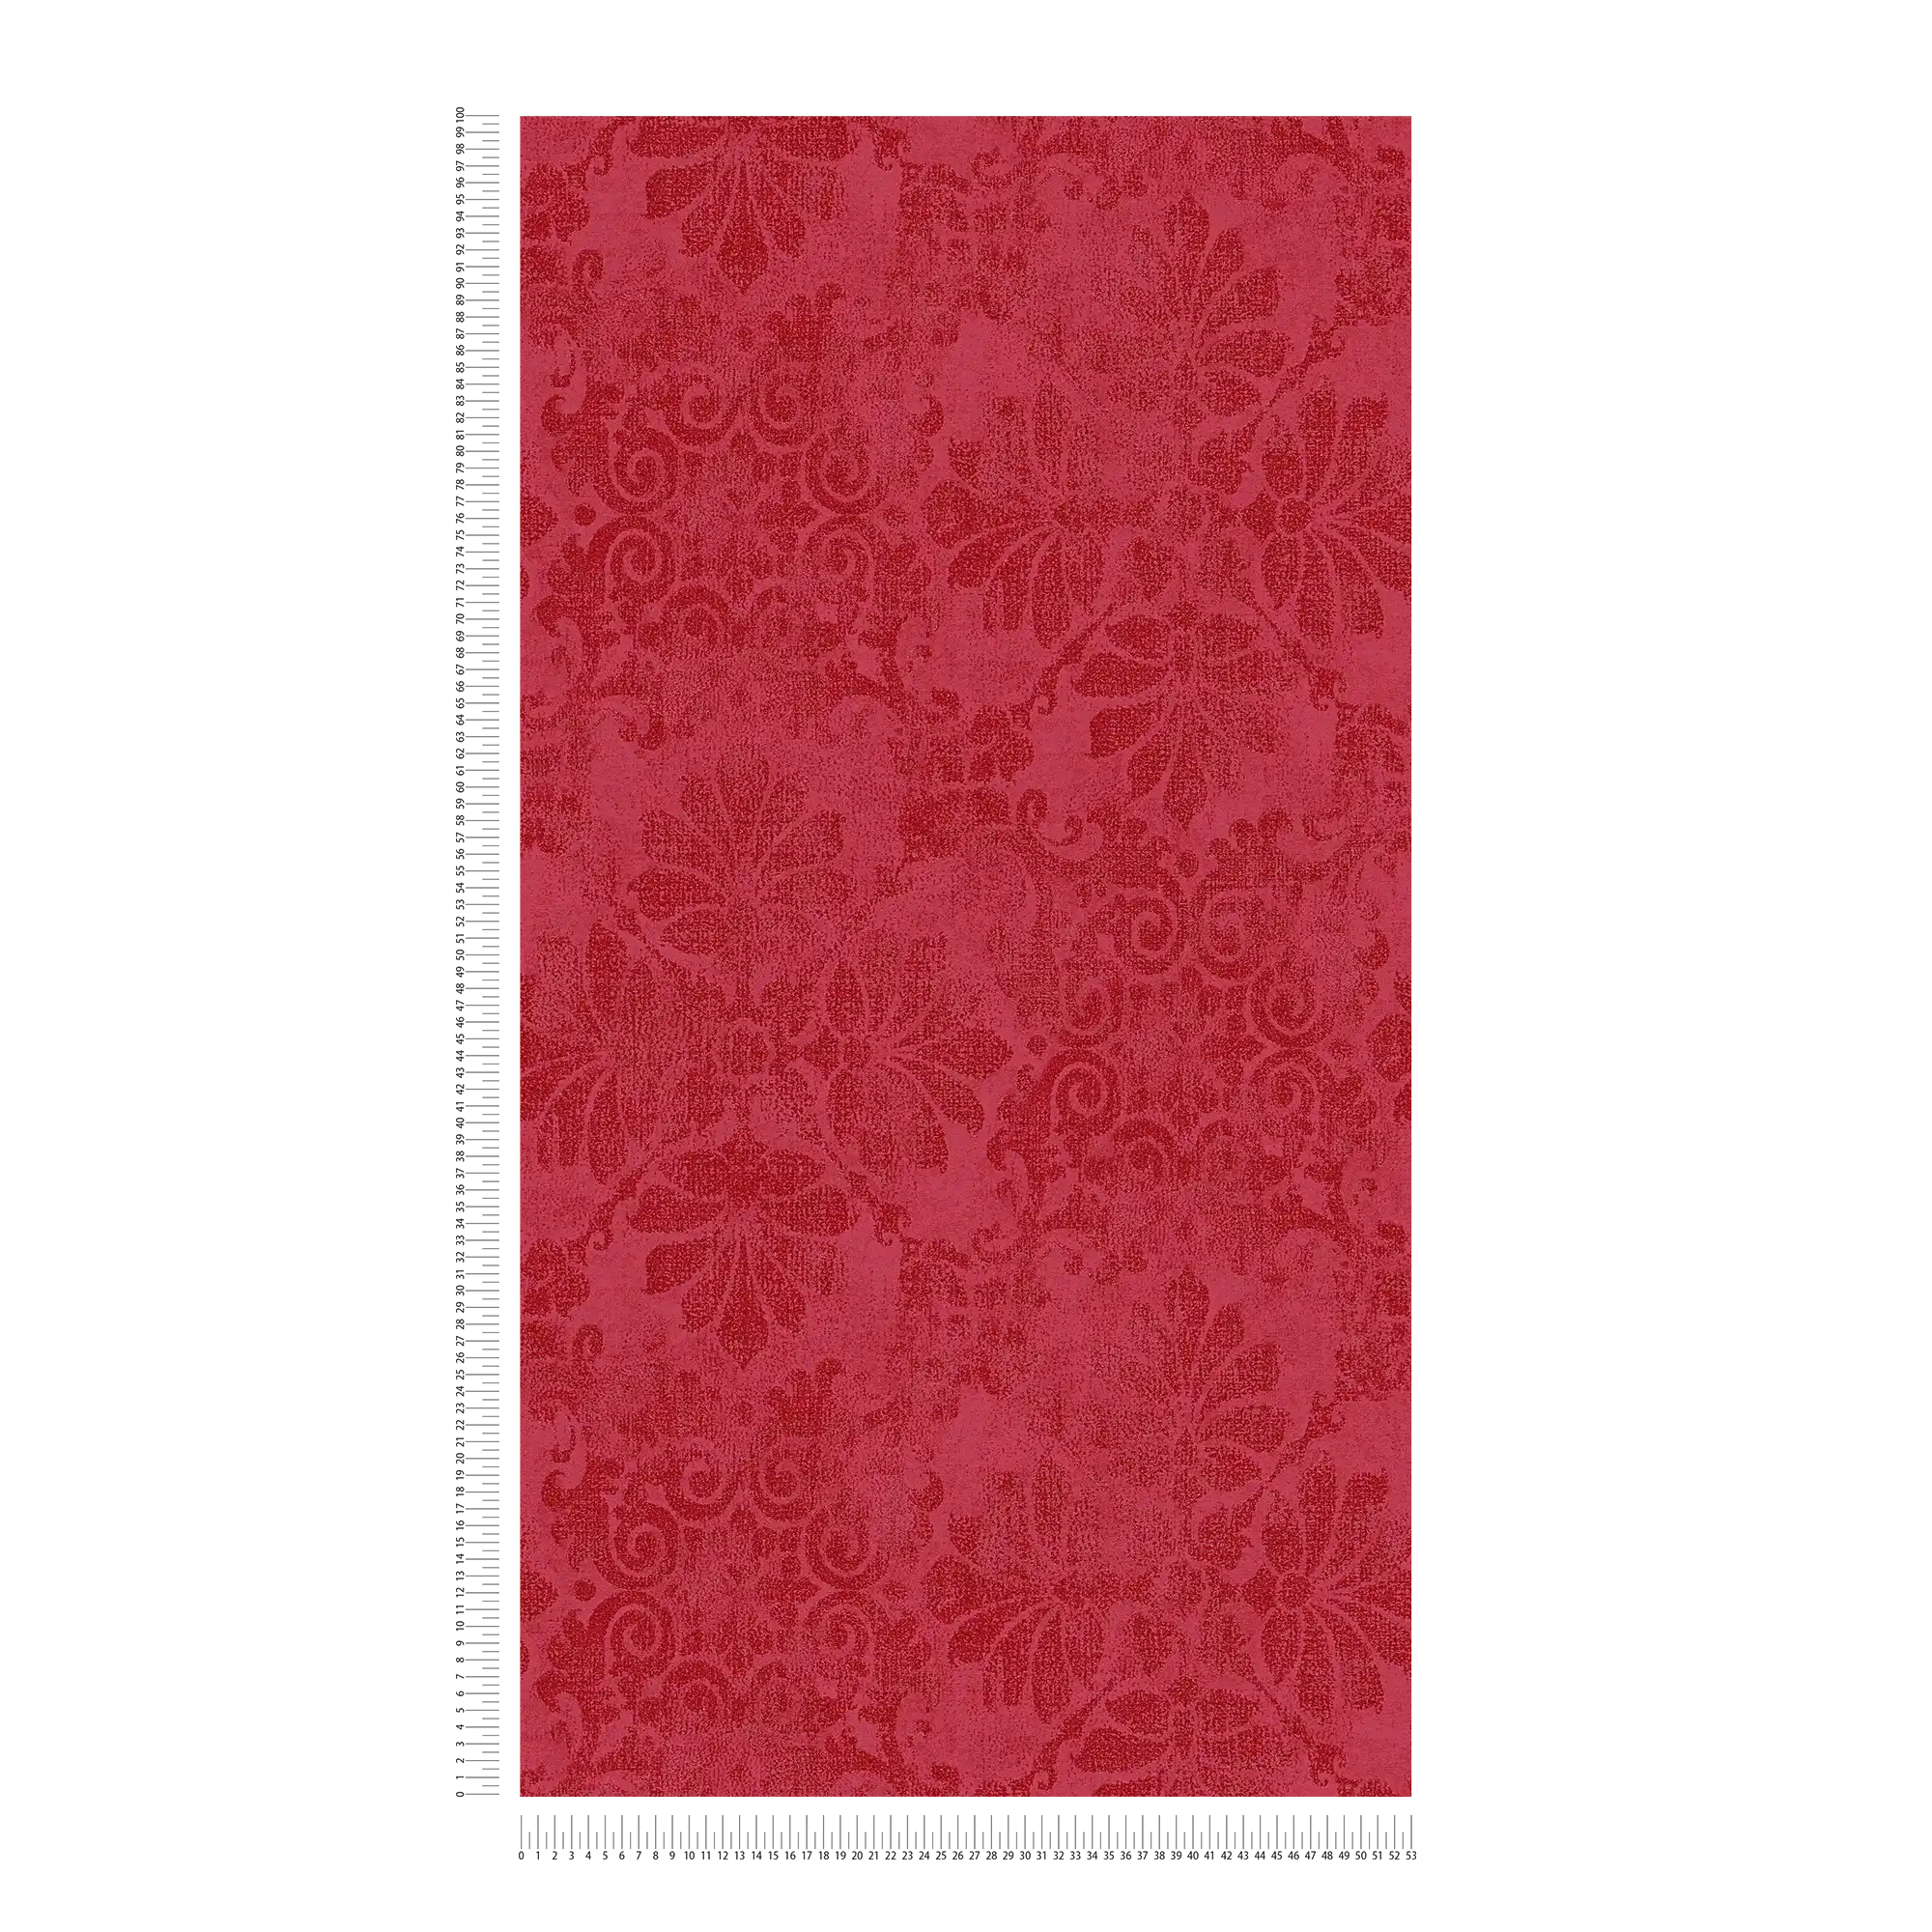             Carta da parati con ornamenti floreali in stile vintage - rosso, metallizzato
        